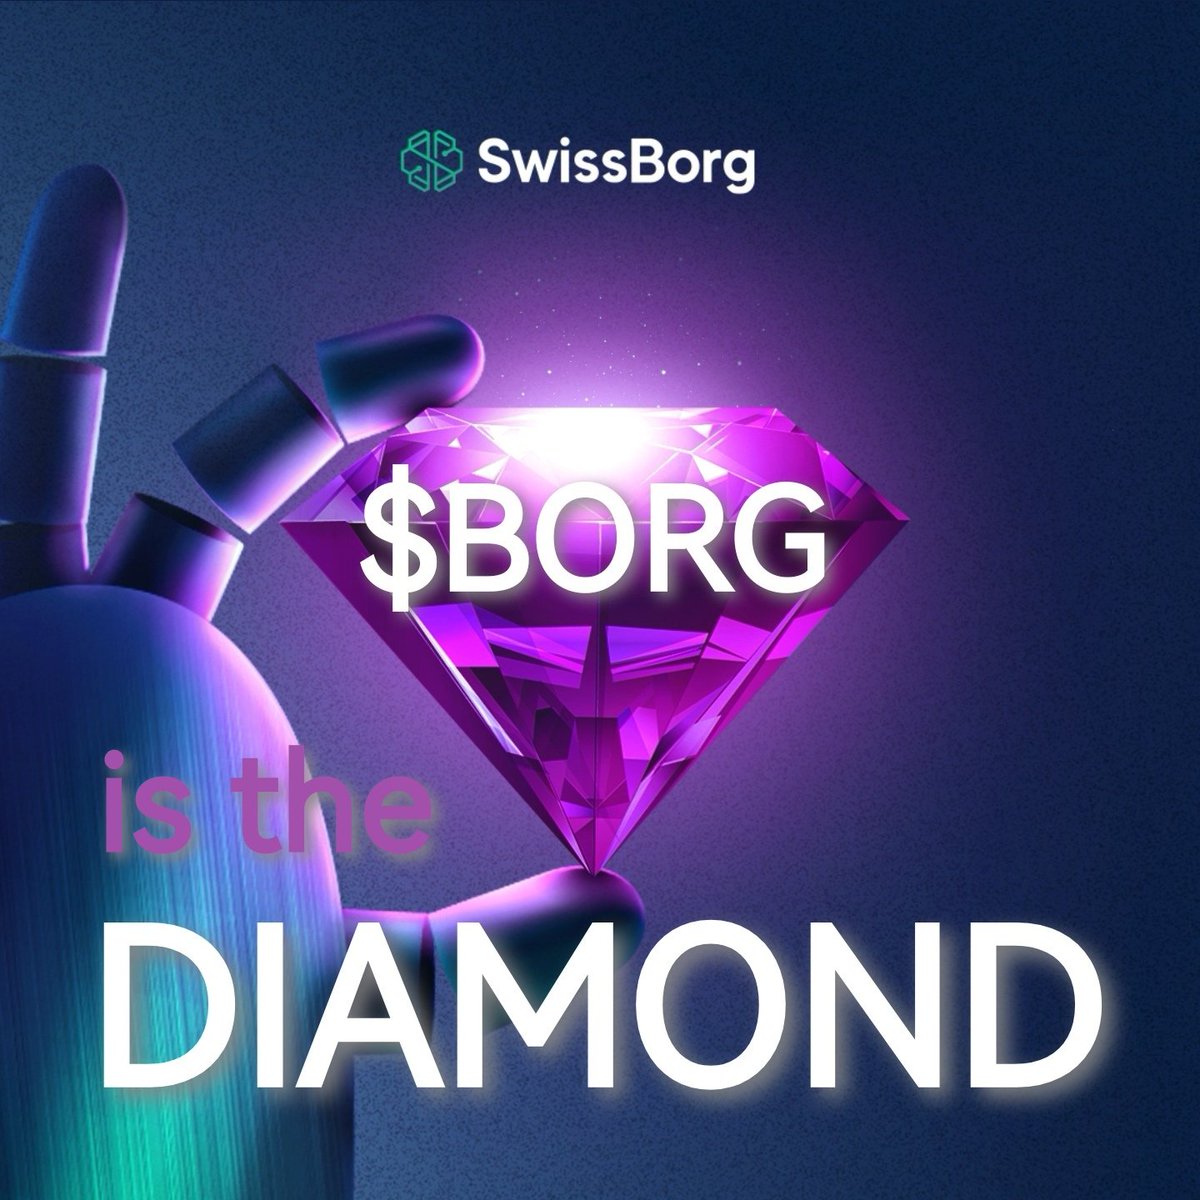 @ponkesol $BORG 💚 #BORG 😉
#weareswissborg
#NousSommesSwissBorg
@swissborg is the future for your investments ... 💯 🚀🚀🚀
#SmartEngine #SmartSend
#SwissBorgEarn #Thematics
@Cyrus_Fazel @alex_fazel @AnthoLGSB @nremond @DLophem @f_messina @bmluca87 @ElisaBonaldo @francoishelg @xrisborg